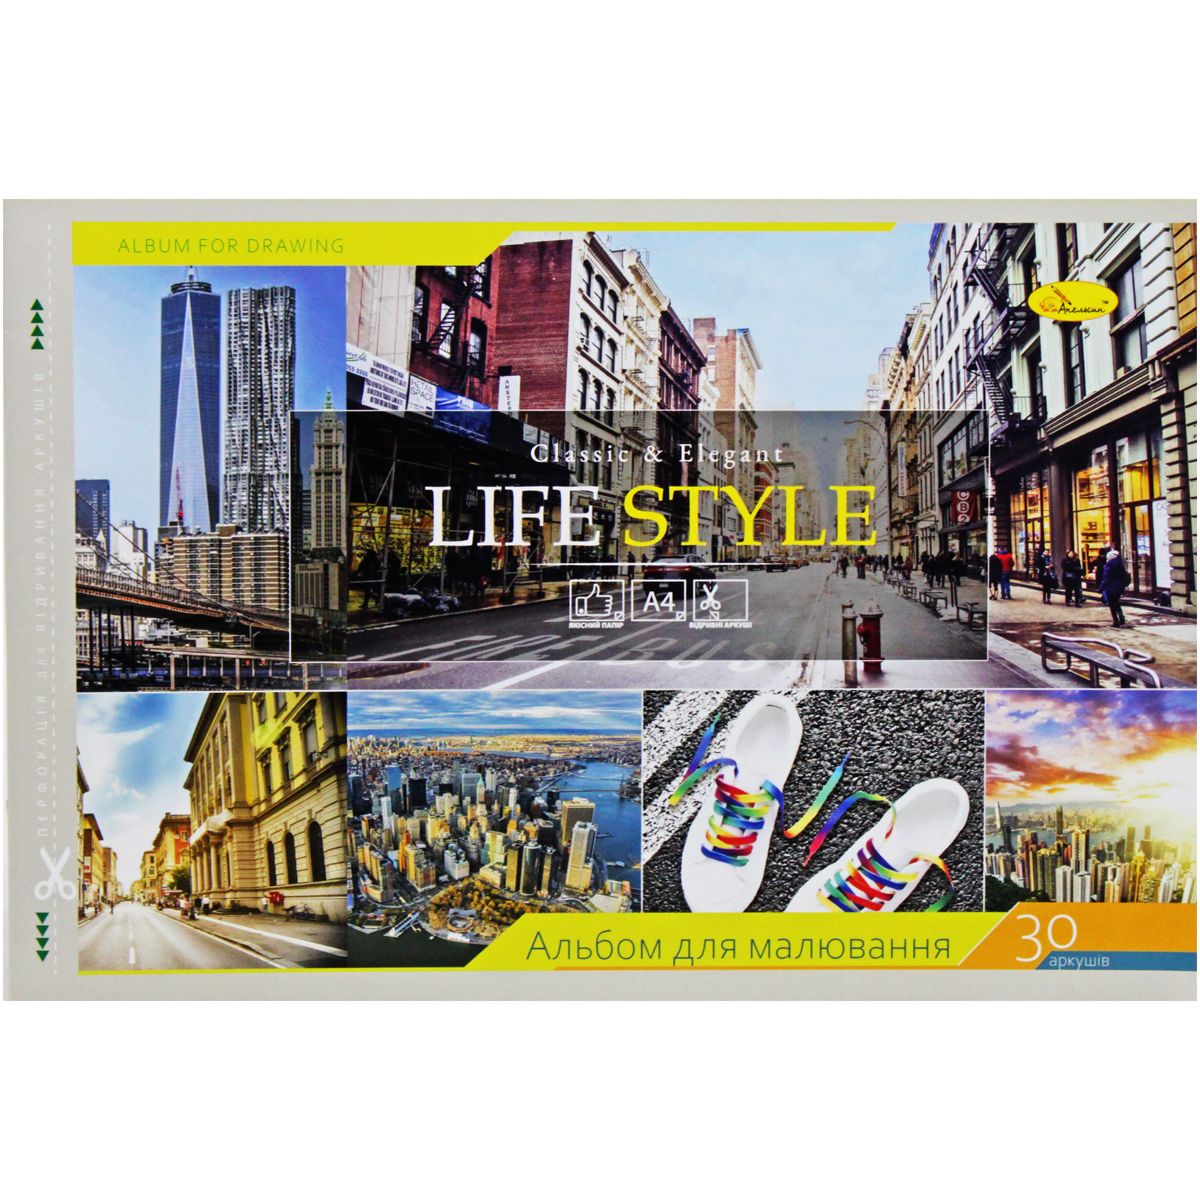 Альбом для малювання "LIFE STYLE", 30 аркушів